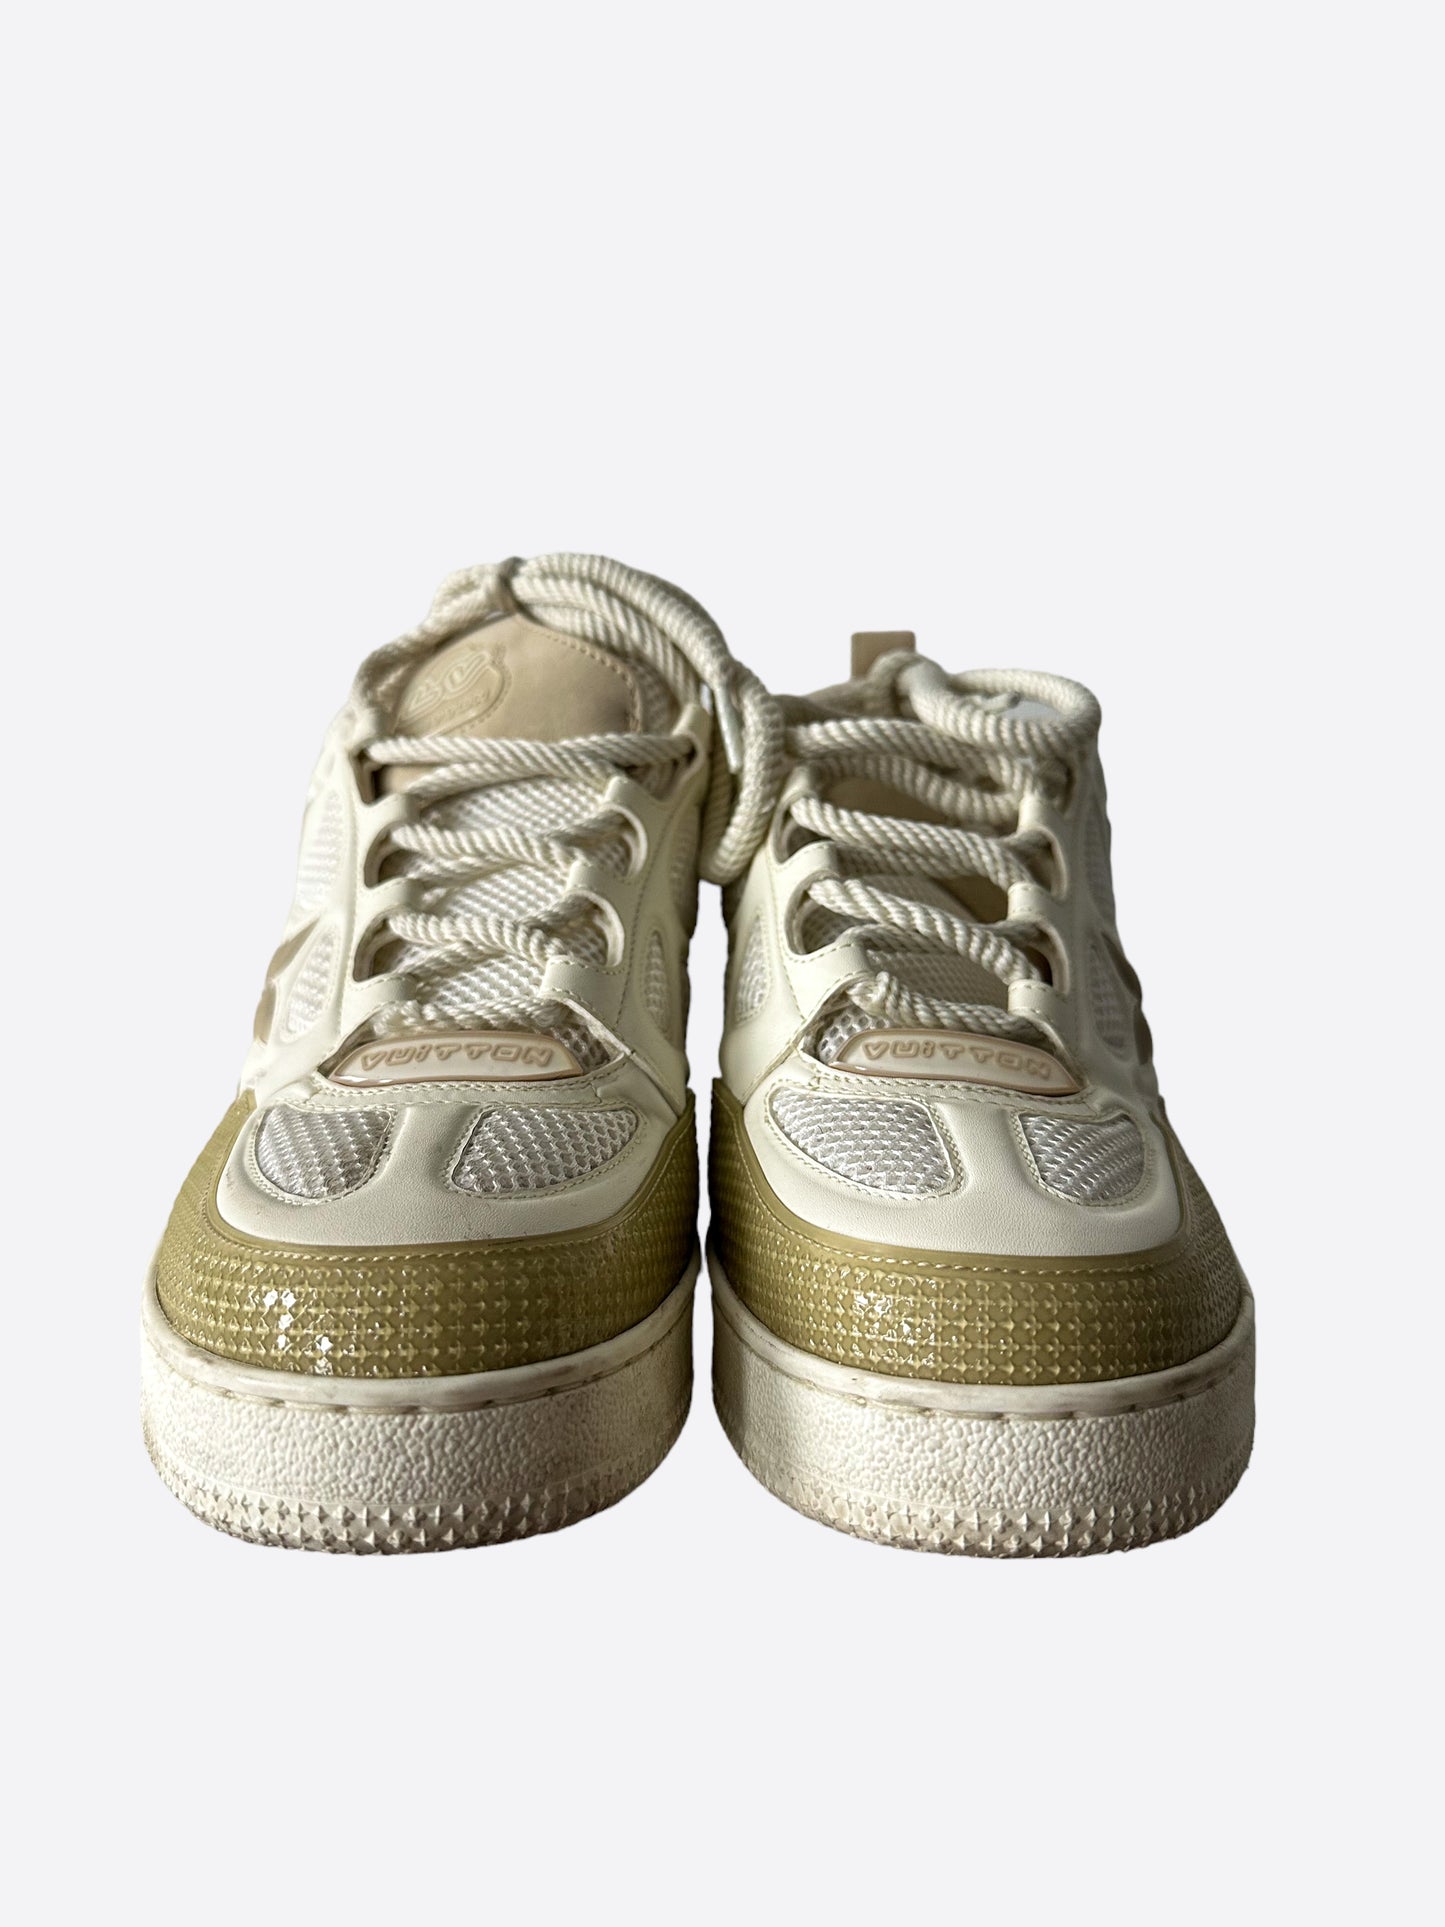 Louis Vuitton LV Skate Sneaker Beige. Size 12.0